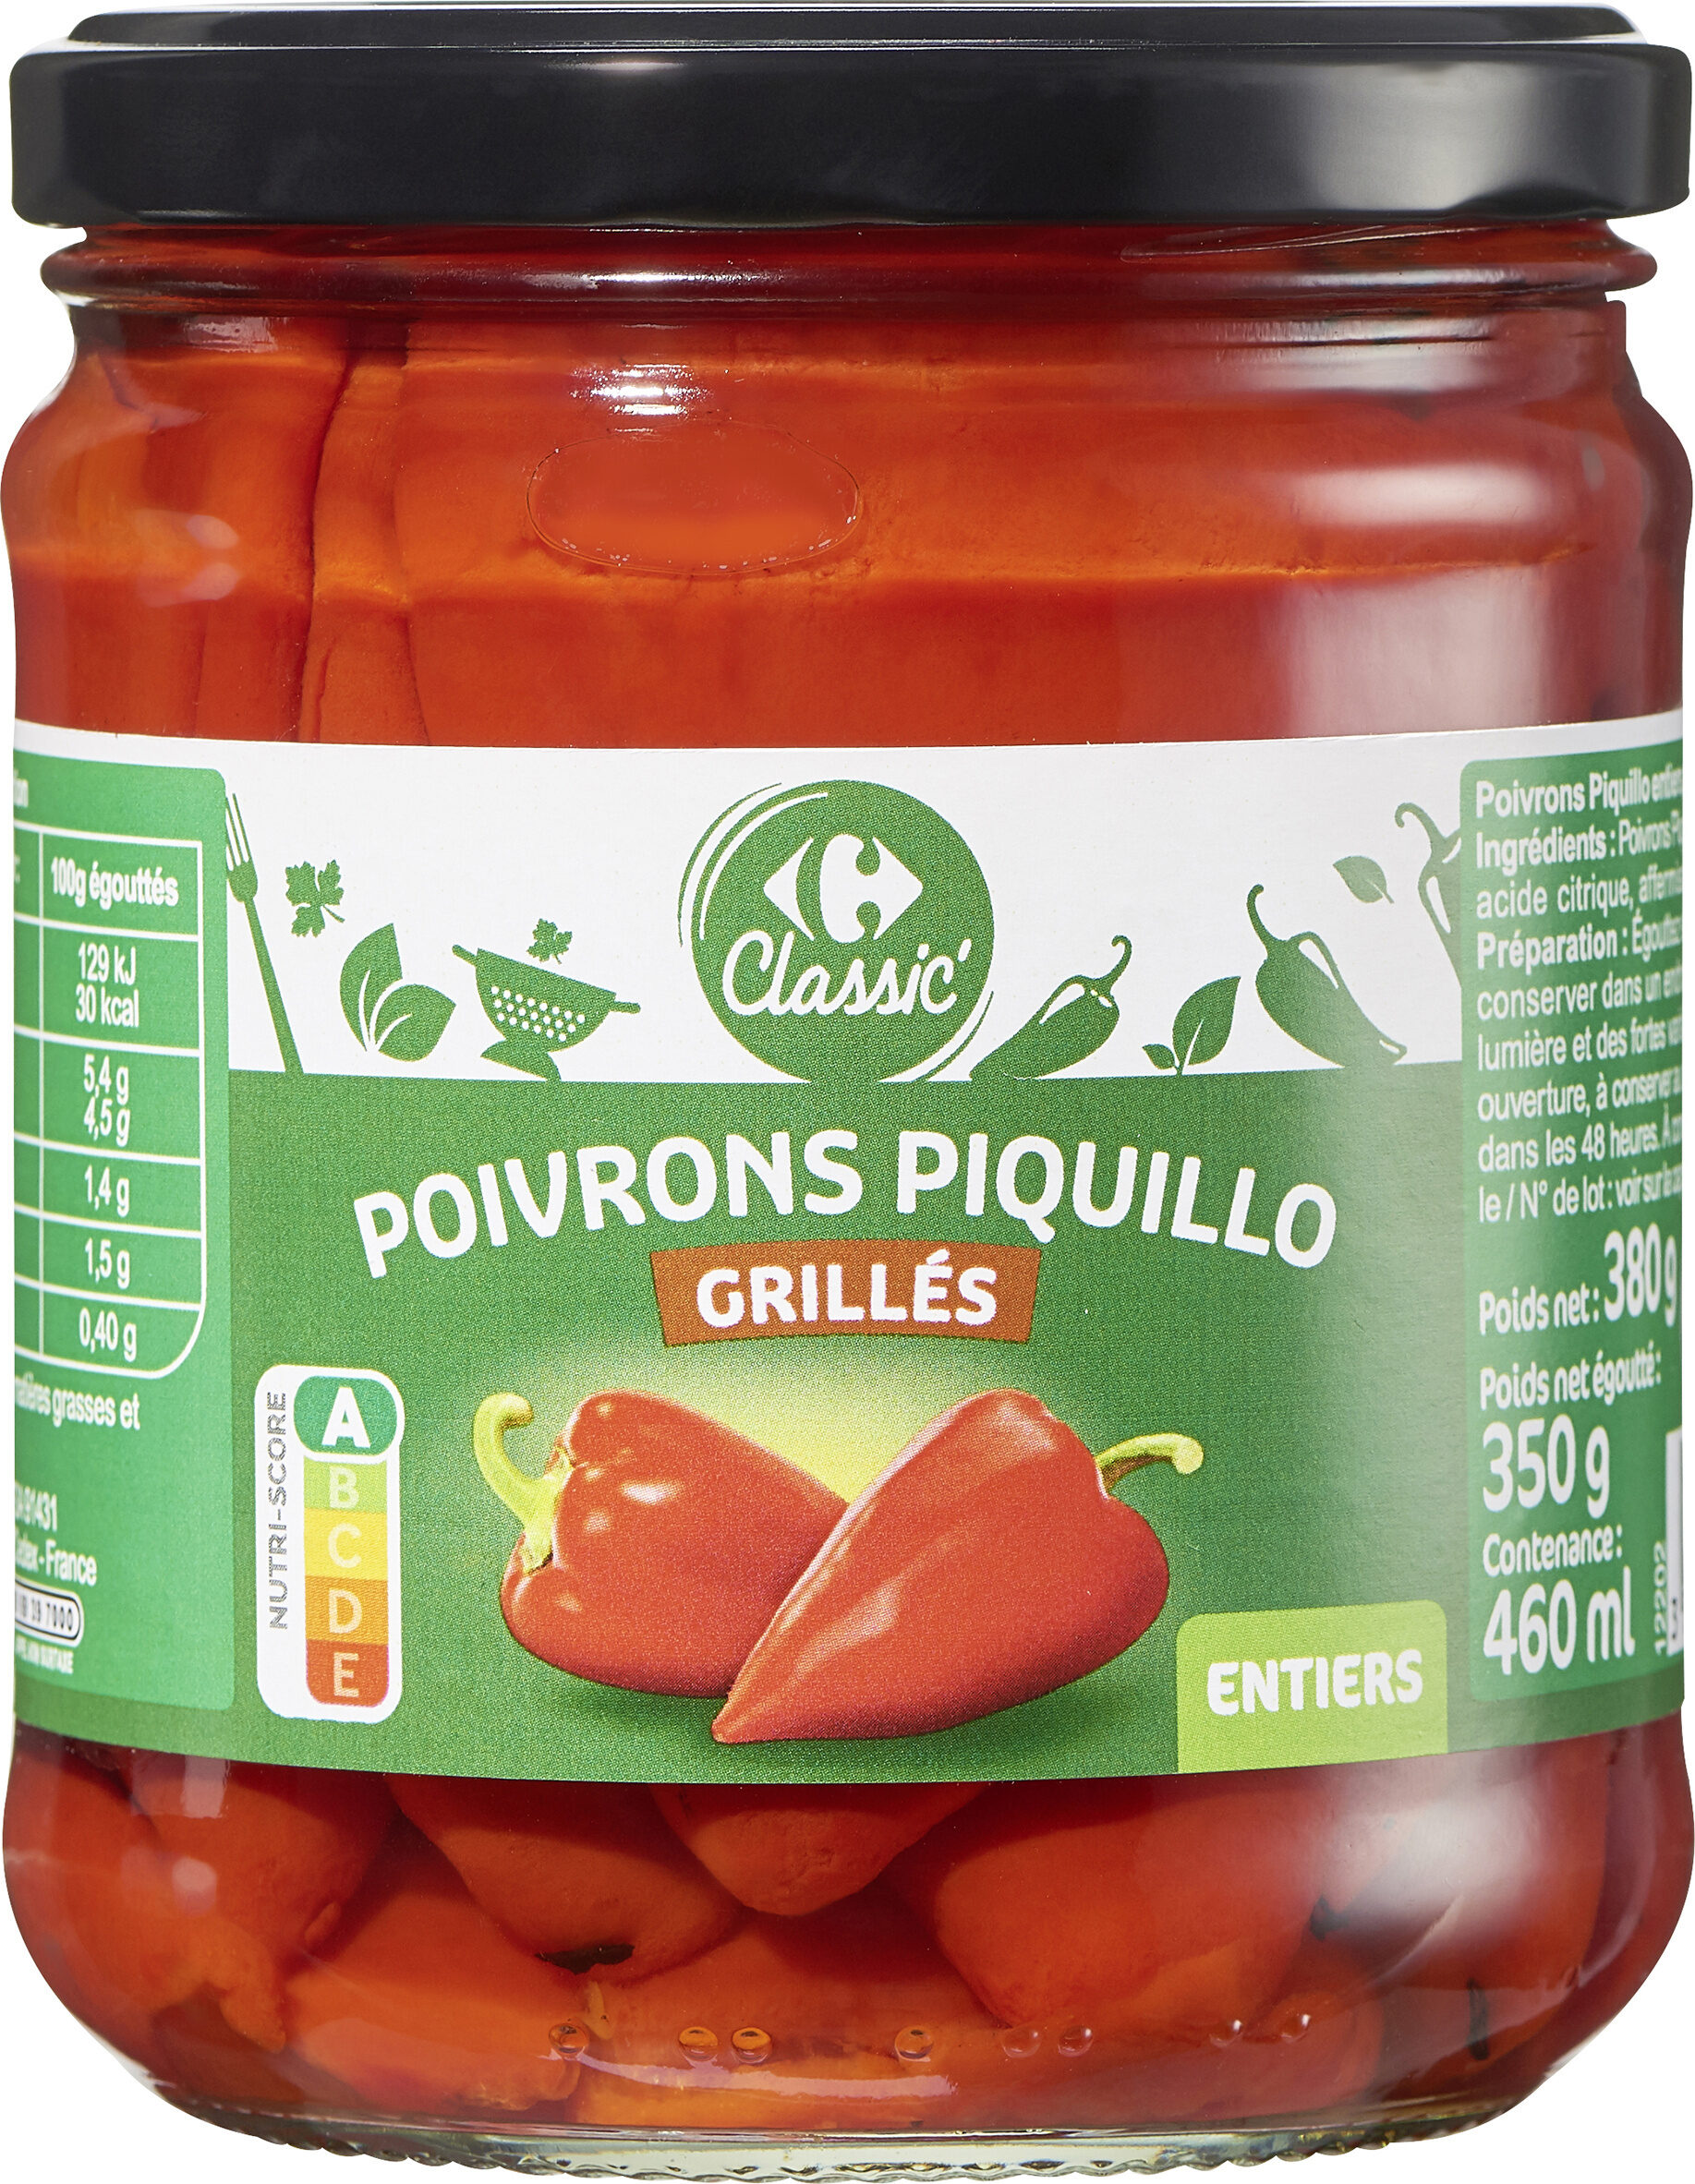 Poivrons Piquillo Grillés - Producte - fr